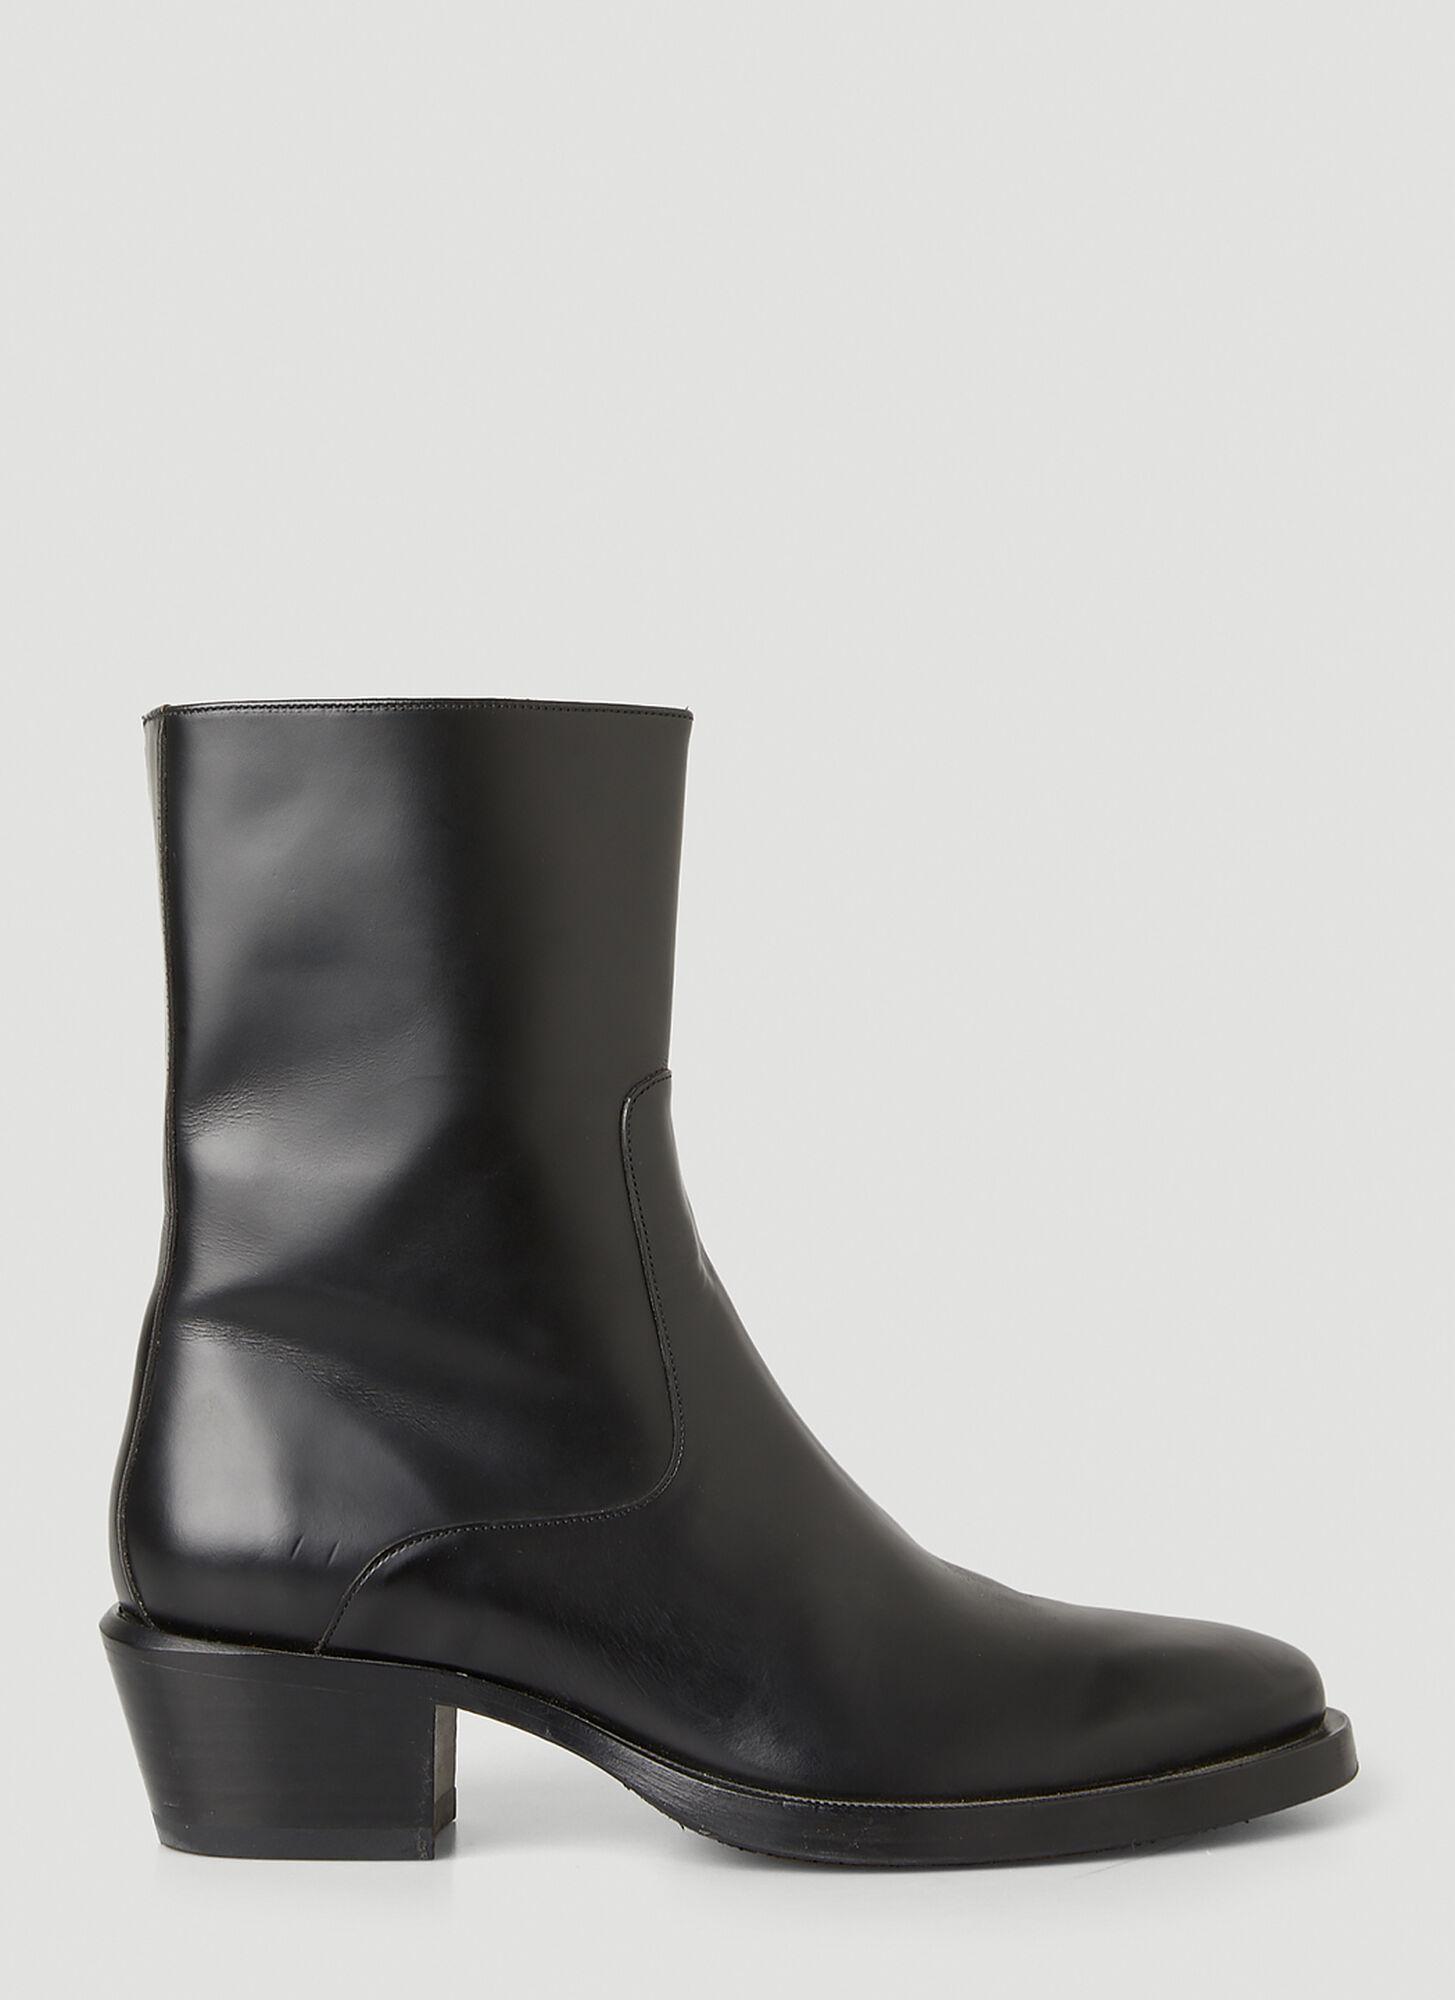 Eytys Blaise Block Heel Boots In Black